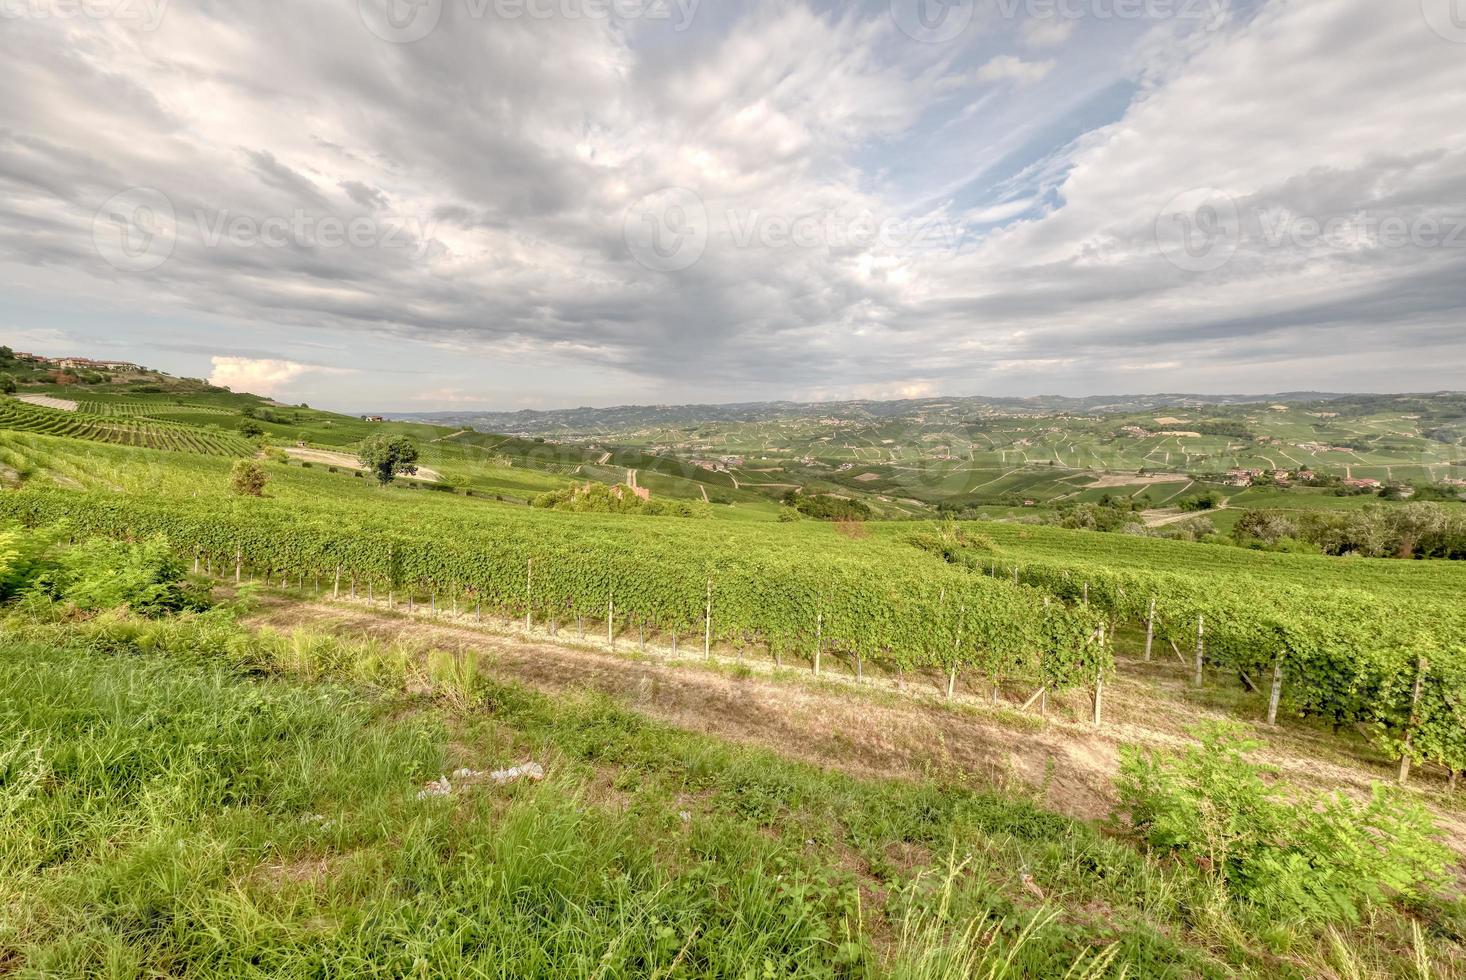 de wijngaarden van langhe, italië, gezien vanuit het gezichtspunt van la morra. foto